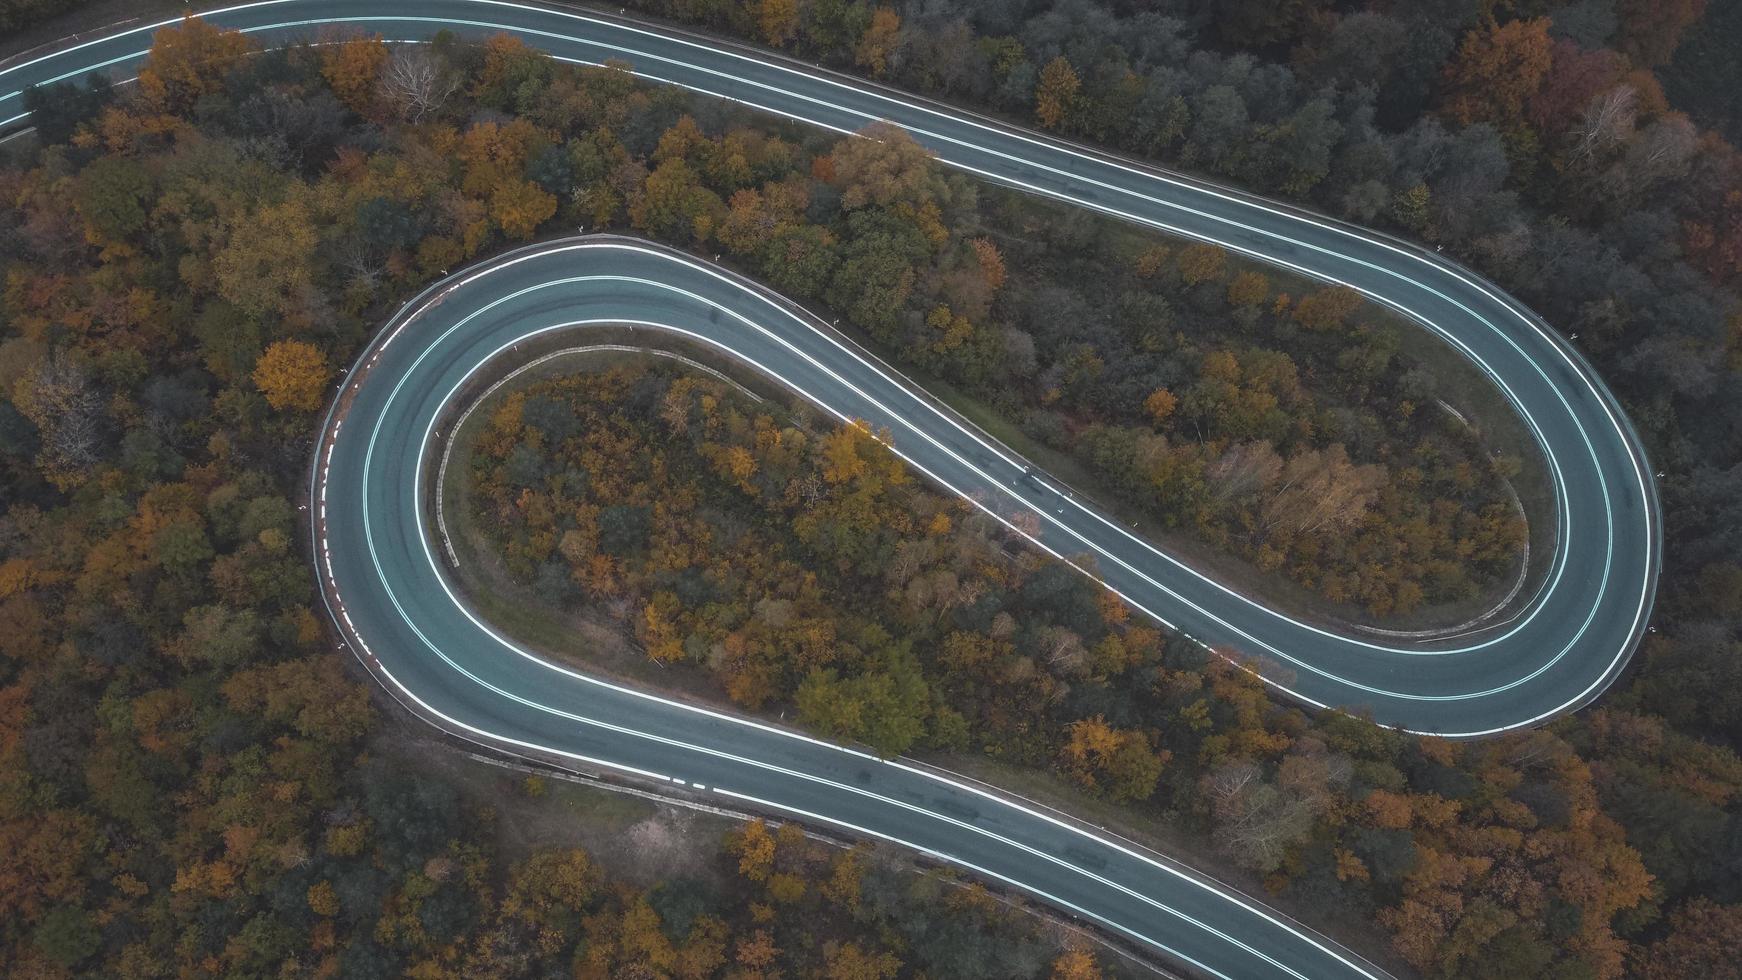 vue aérienne de la route courbe sur les montagnes du sud de la pologne en automne photo